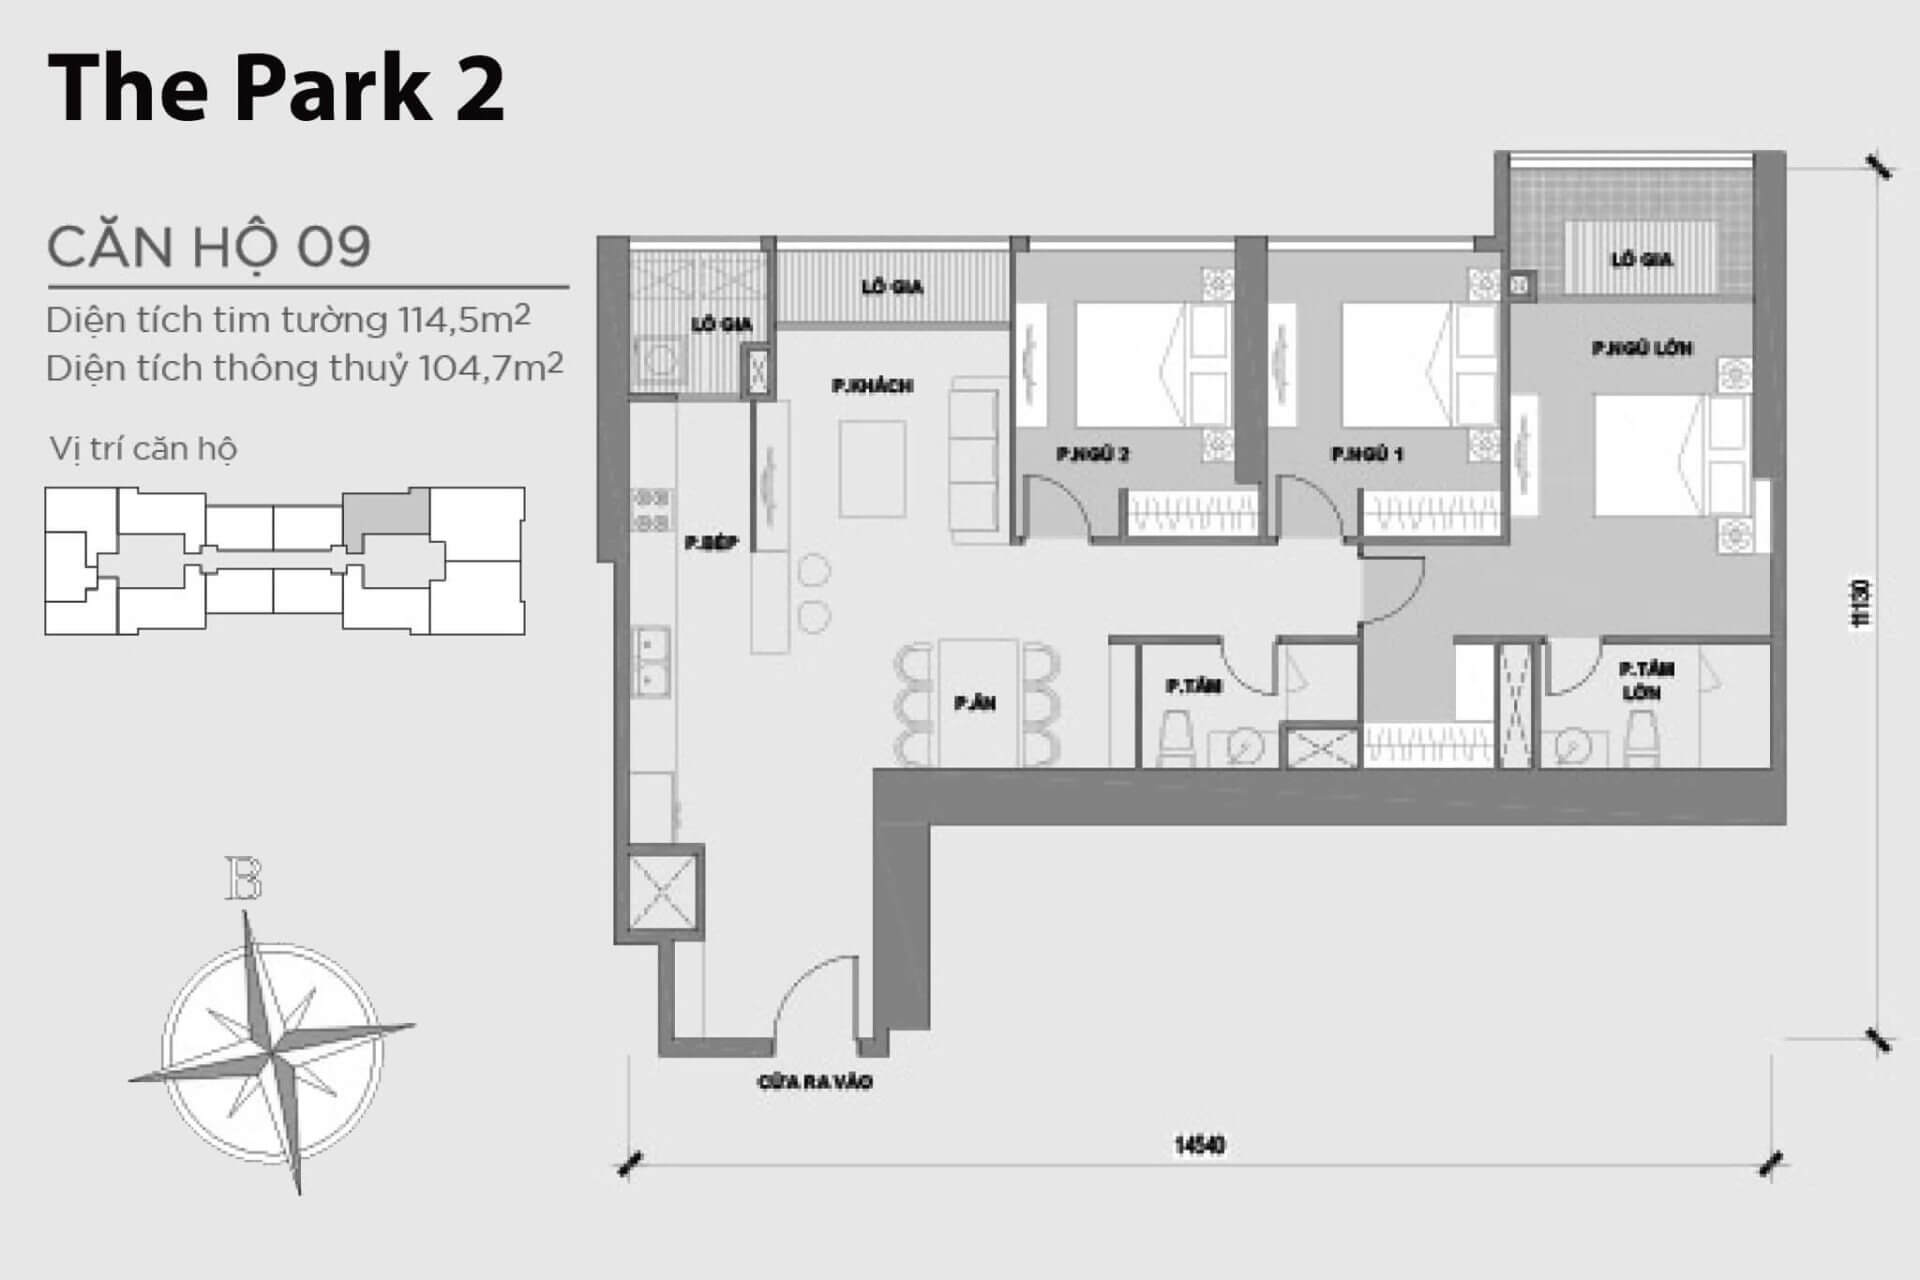 mặt bằng layout căn hộ số 09 Park 2 Vinhomes Central Park